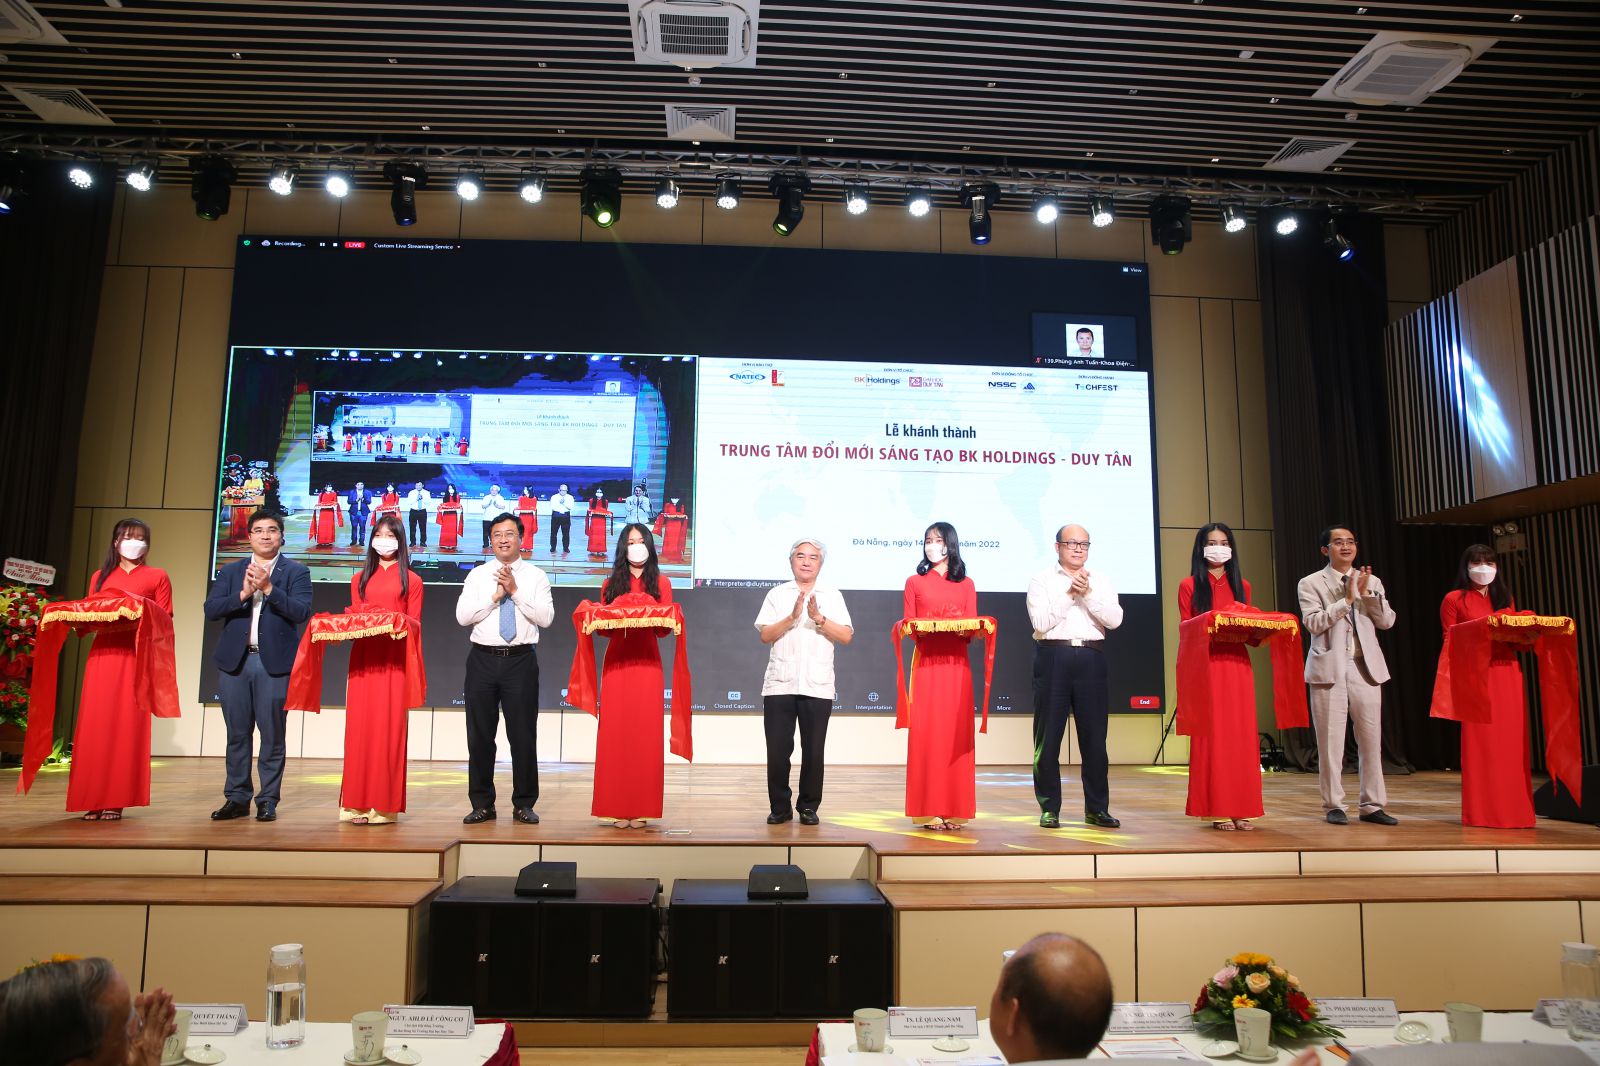 Đại diện Bộ Khoa học và Công nghệ đã phát động Ngày hội Khởi nghiệp sáng tạo Quốc gia (Techfest 2022) lần thứ 8 khu vực miền Trung – Tây nguyên tại hội thảo.